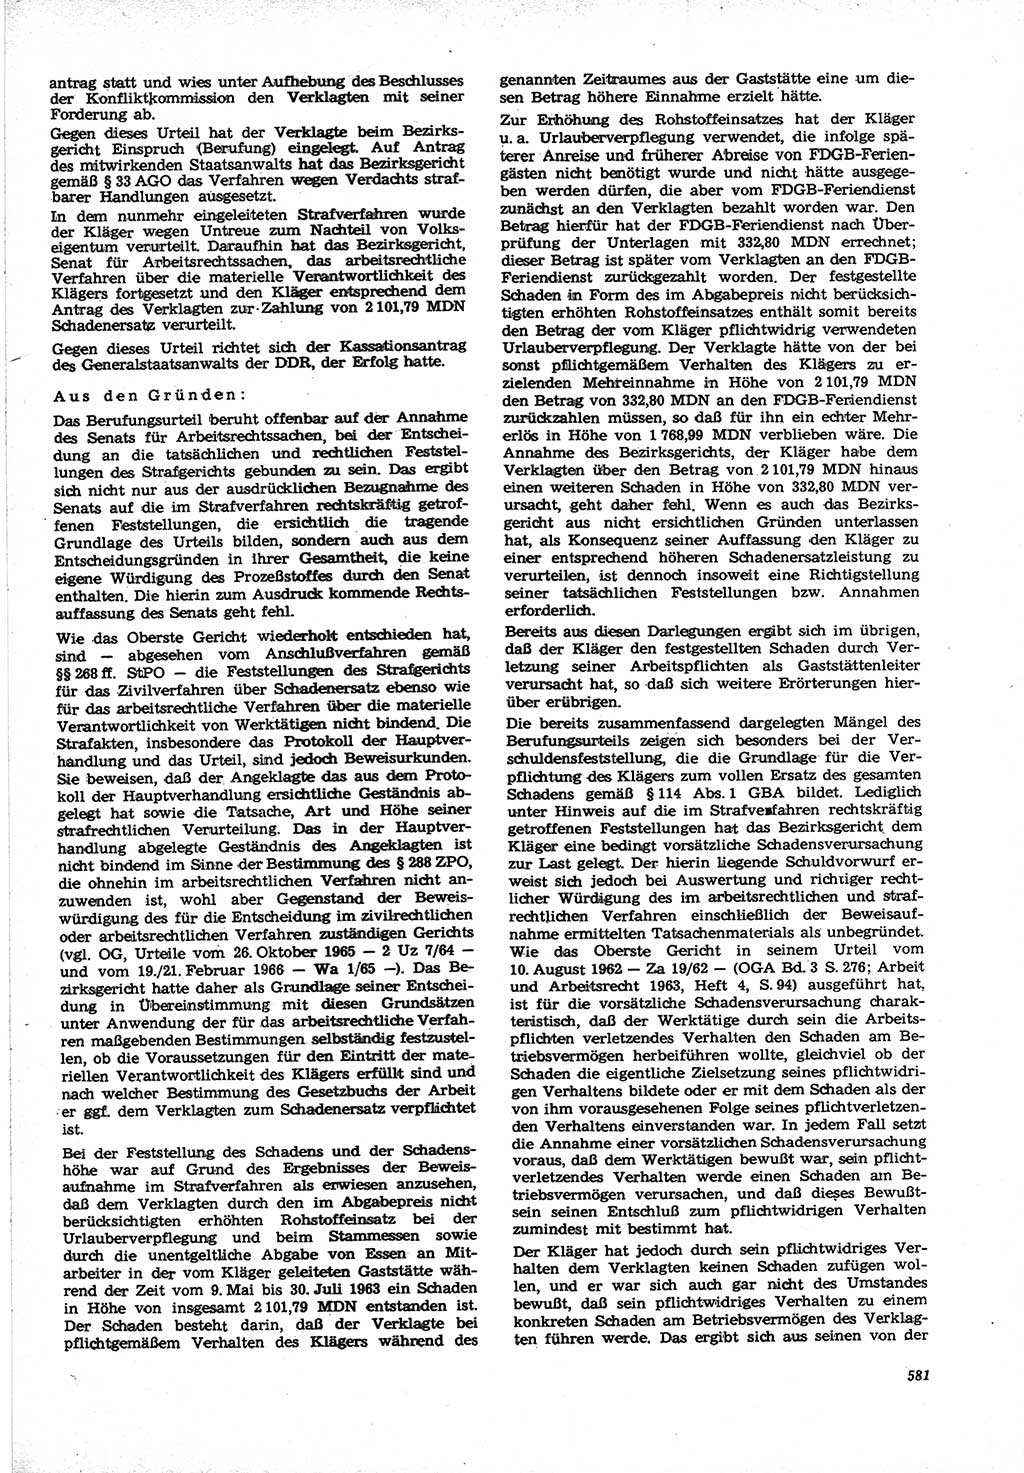 Neue Justiz (NJ), Zeitschrift für Recht und Rechtswissenschaft [Deutsche Demokratische Republik (DDR)], 21. Jahrgang 1967, Seite 581 (NJ DDR 1967, S. 581)